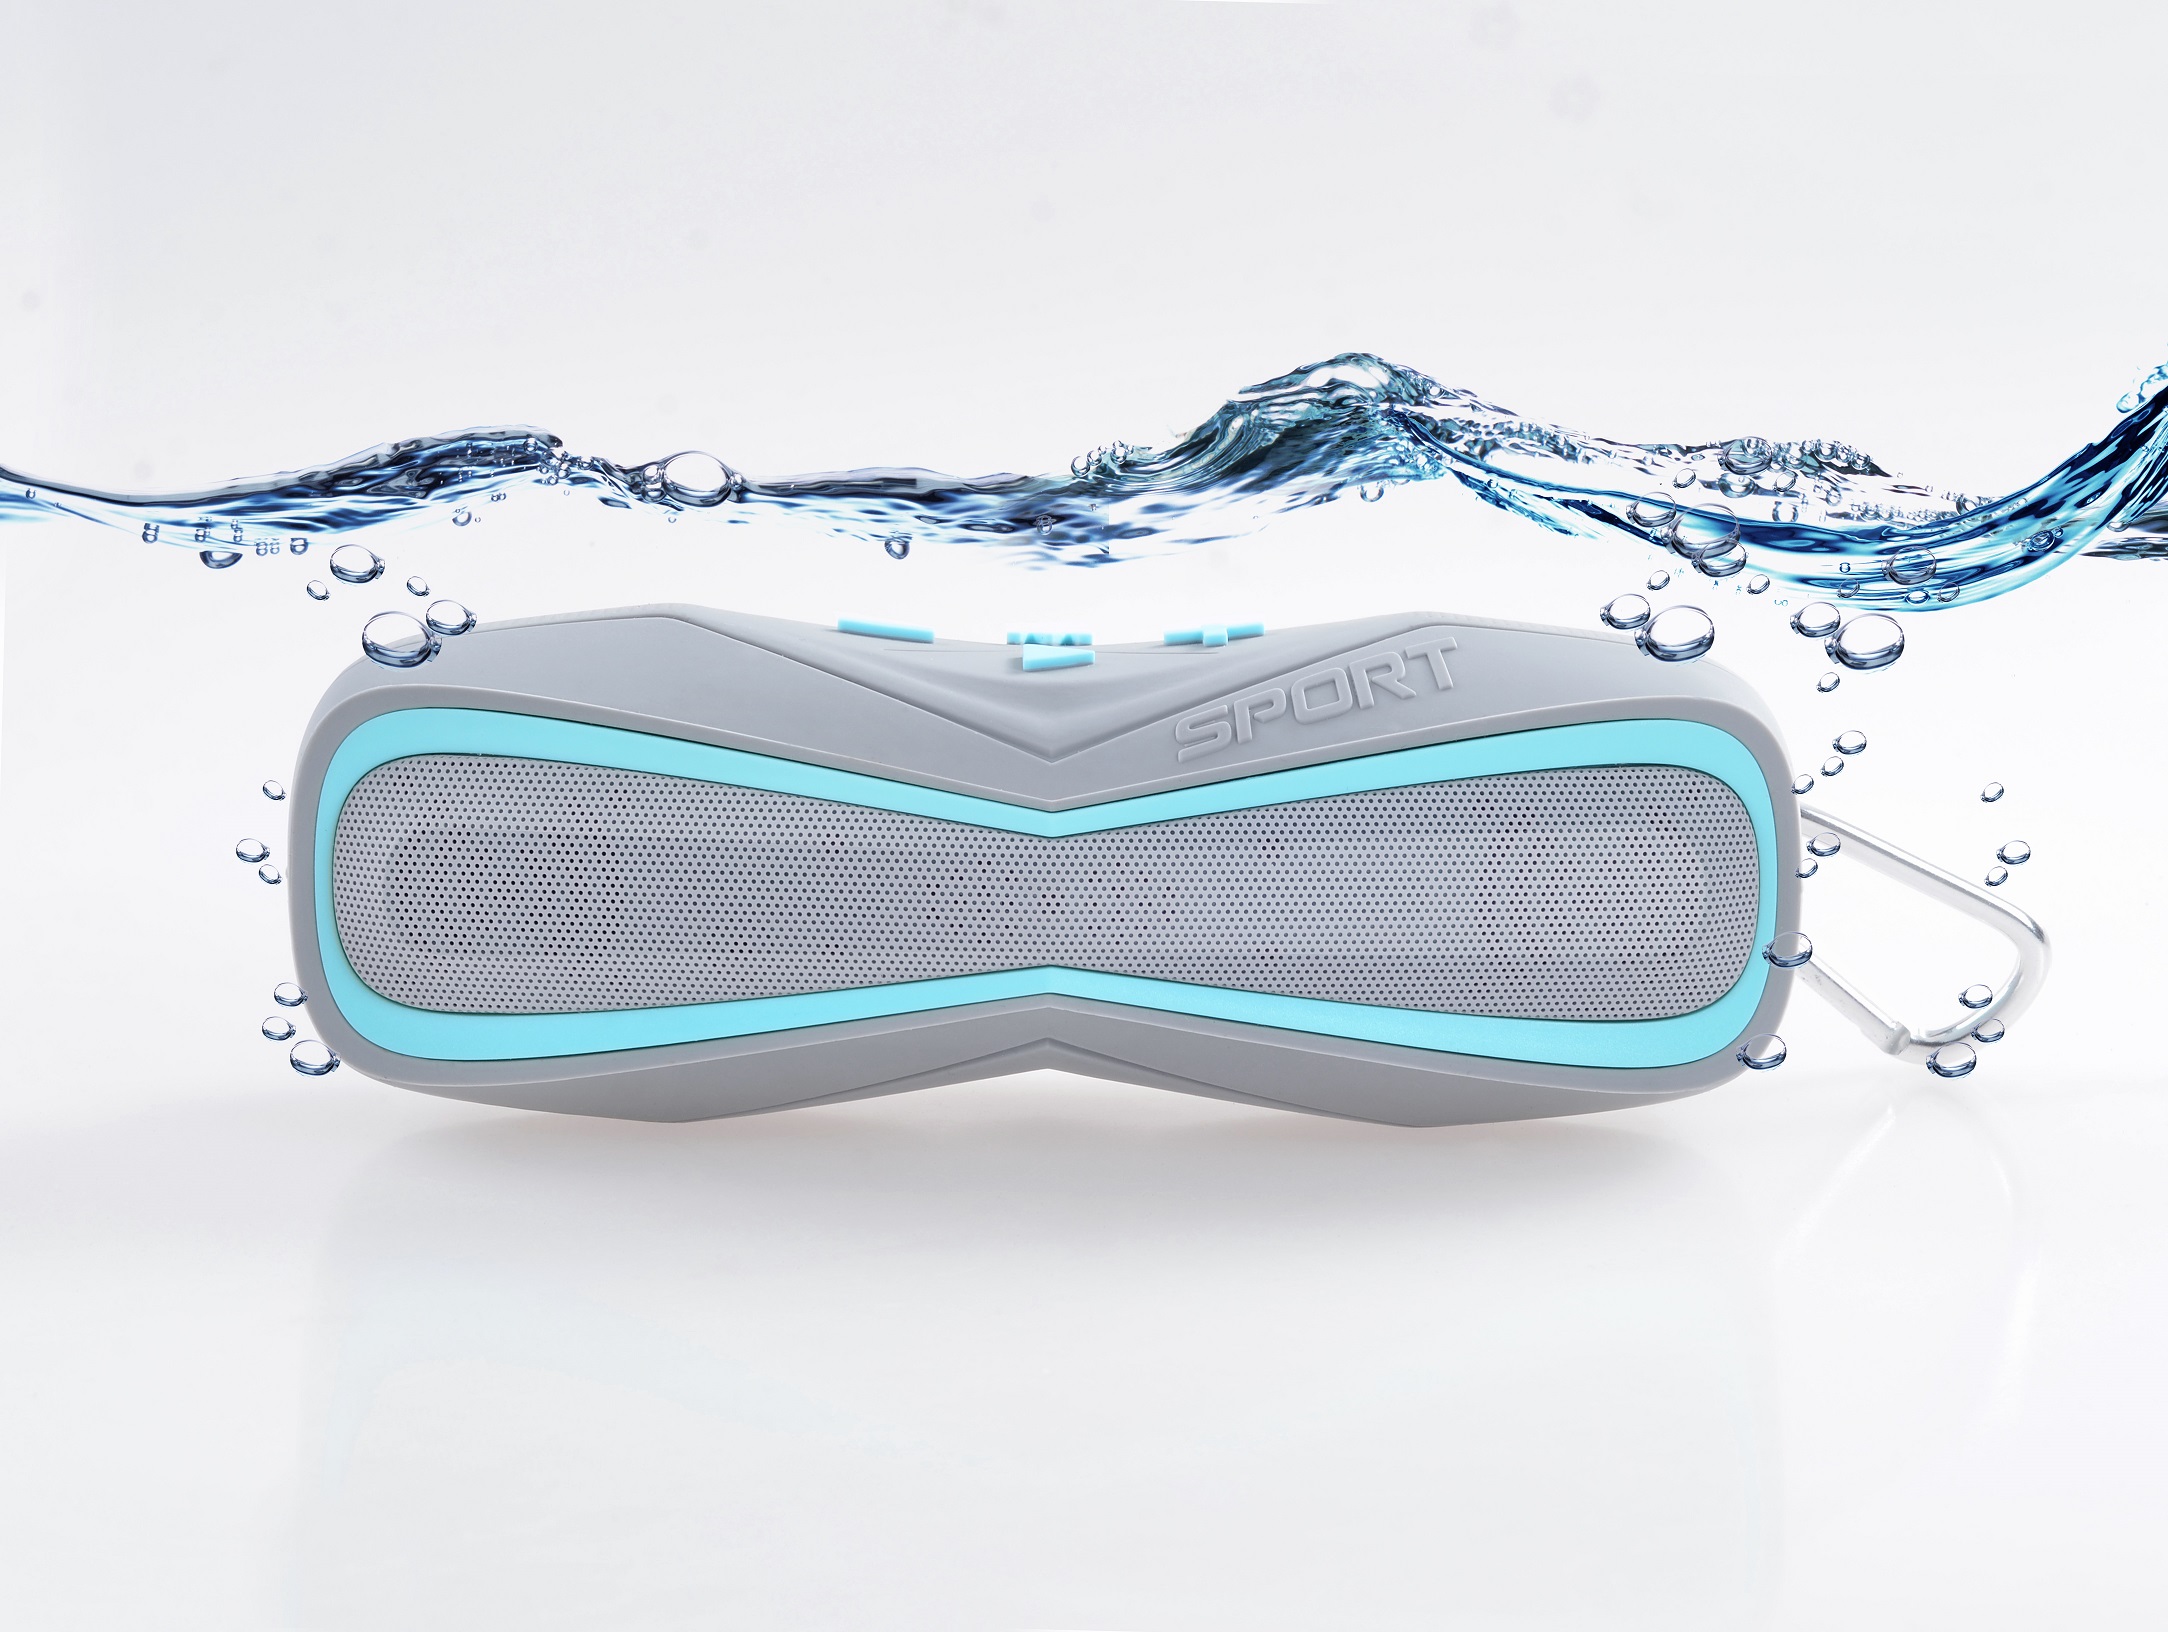 New Bluetooth speaker outdoor sport IPX7 waterproof bluetooth wireless speaker